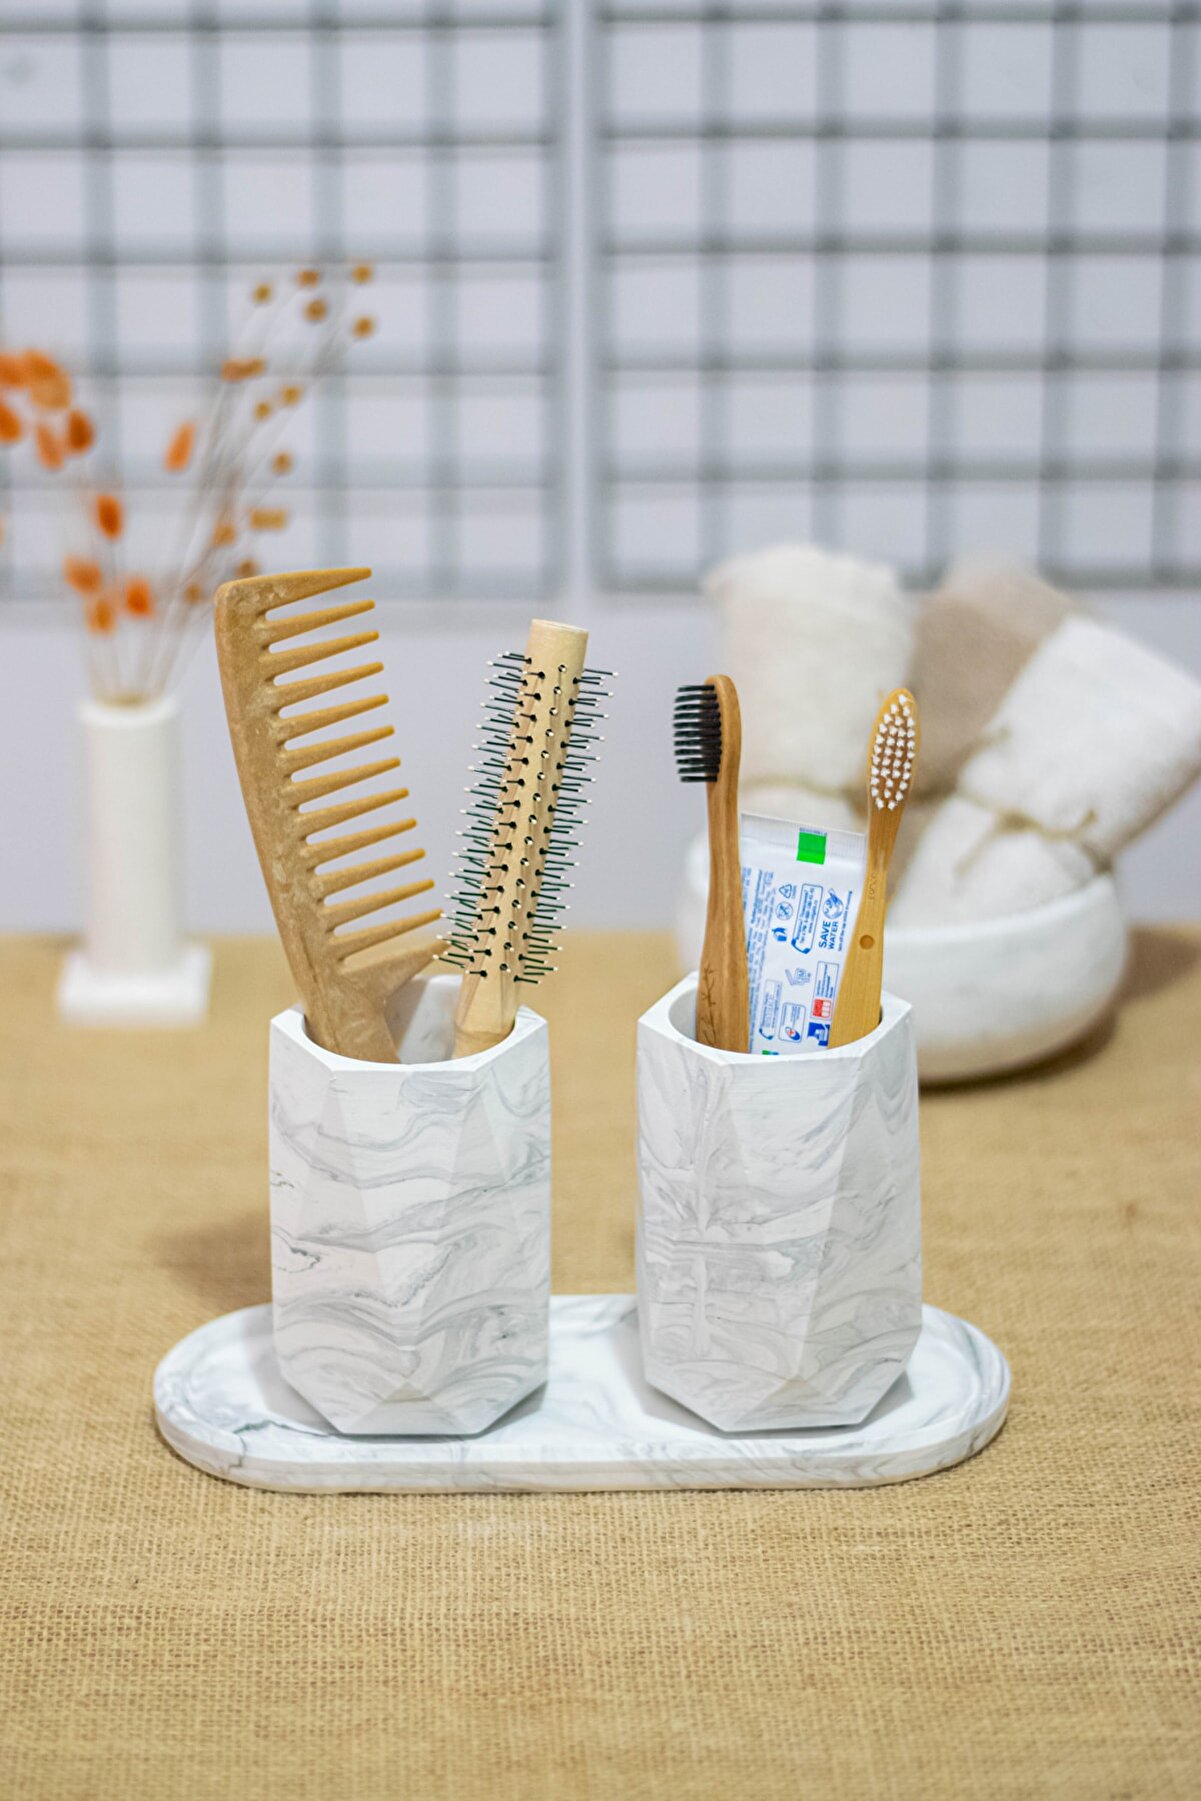 PAYATASARIM Banyo Seti Tepsili Diş Fırçalık, Diş Macunluk, Makyaj Organizeri